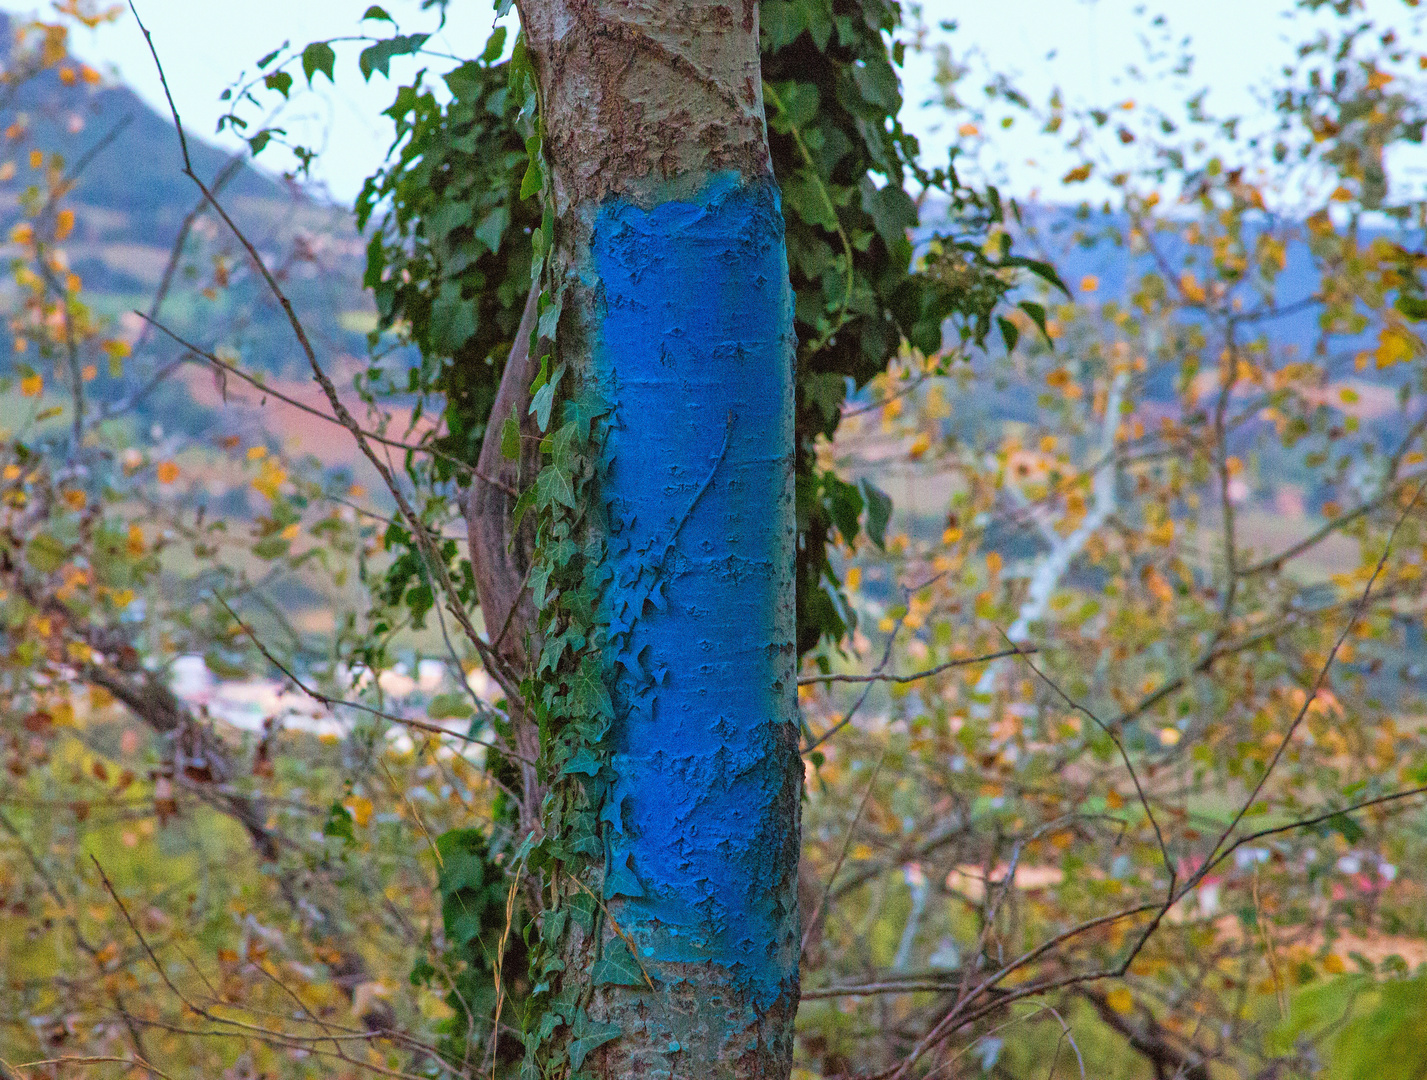 warum in dieser Gegend einige Baumstaemme blau markiert waren,